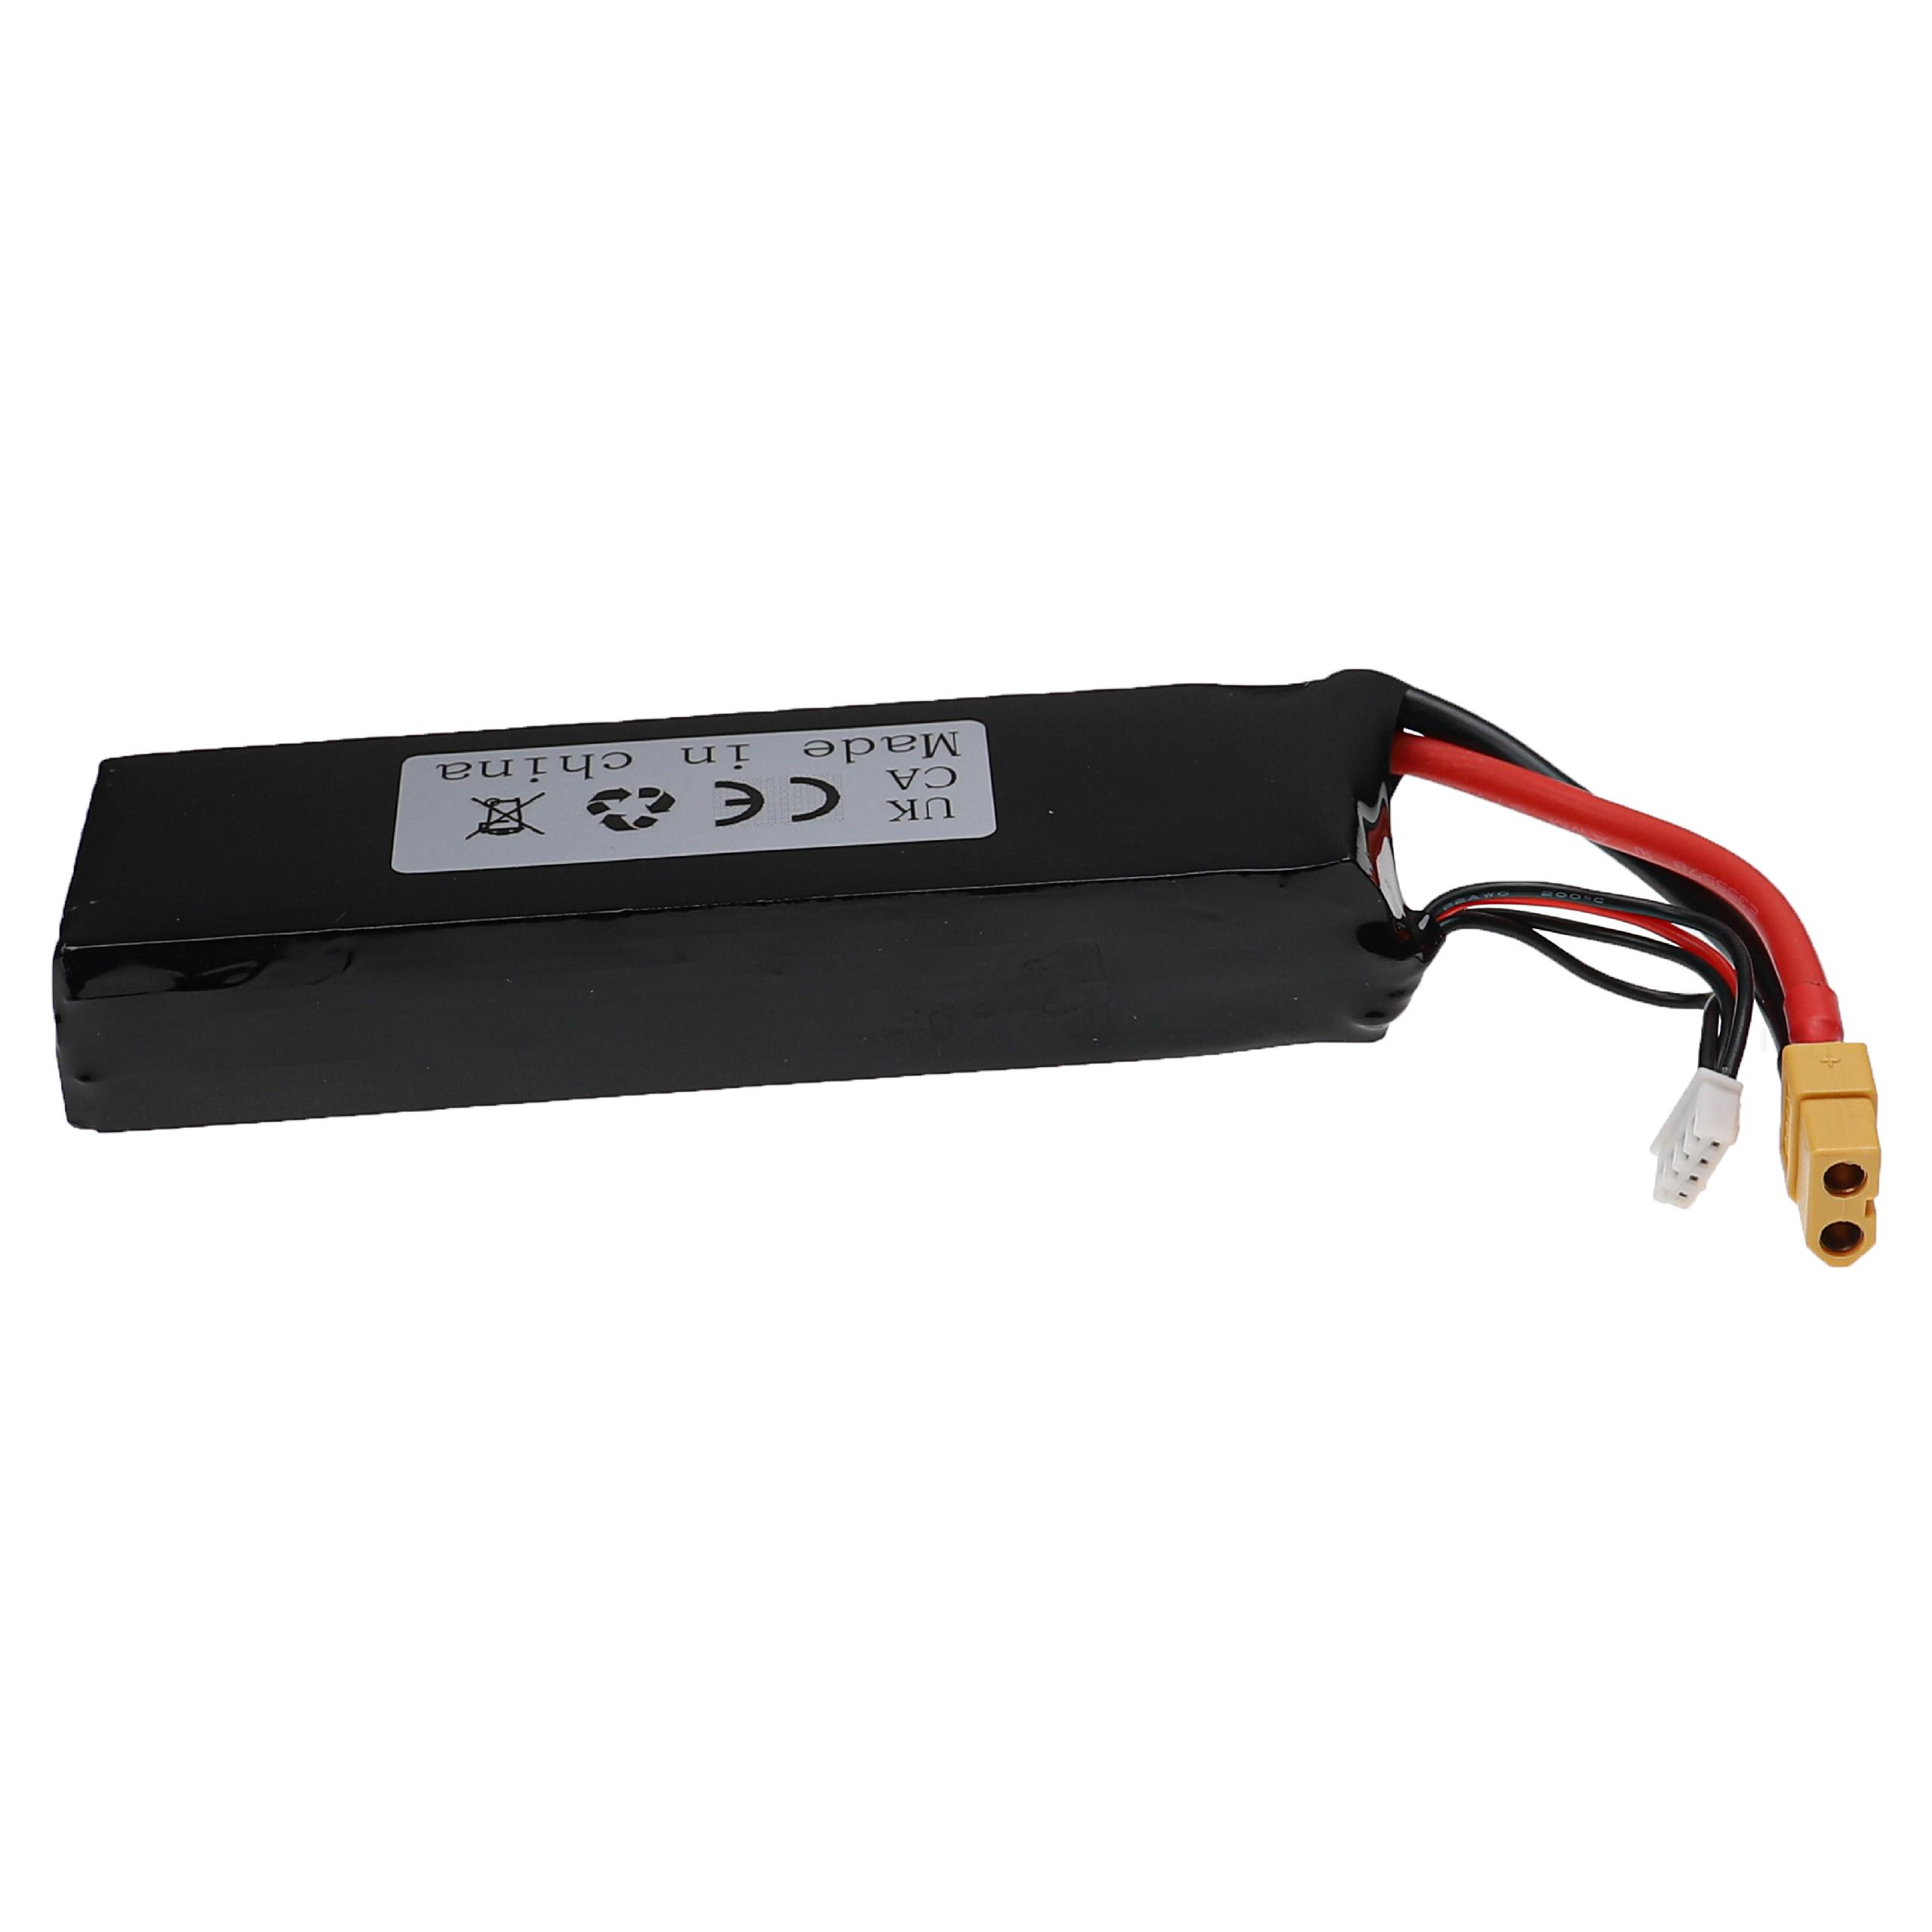 Batería para dispositivos modelismo - 3500 mAh 11,1 V Li-poli, XT60